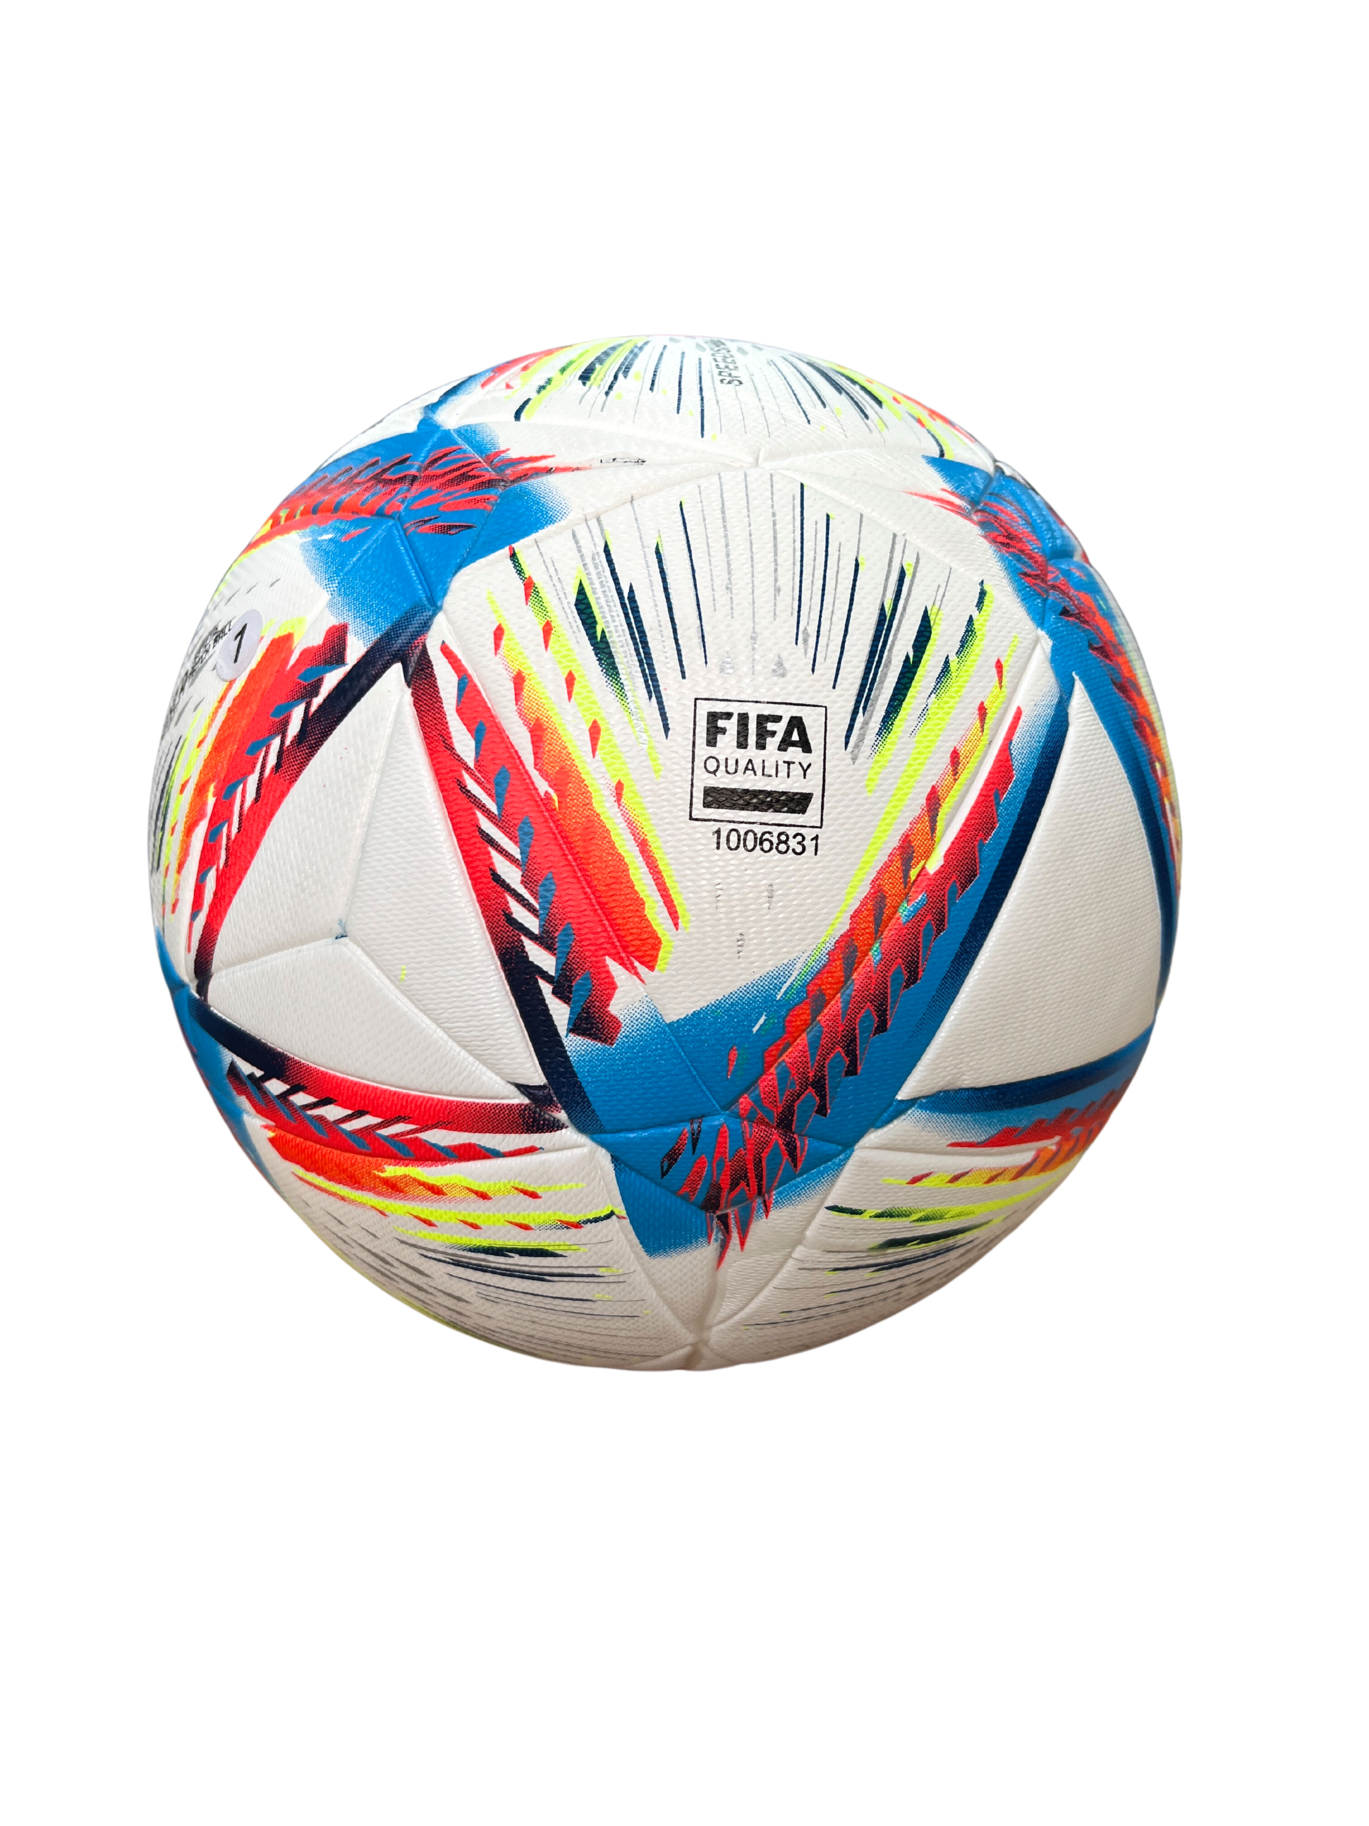 FIFA World Cup Qatar 2022 AL RIHLA Official Match Ball (SIZE 4)